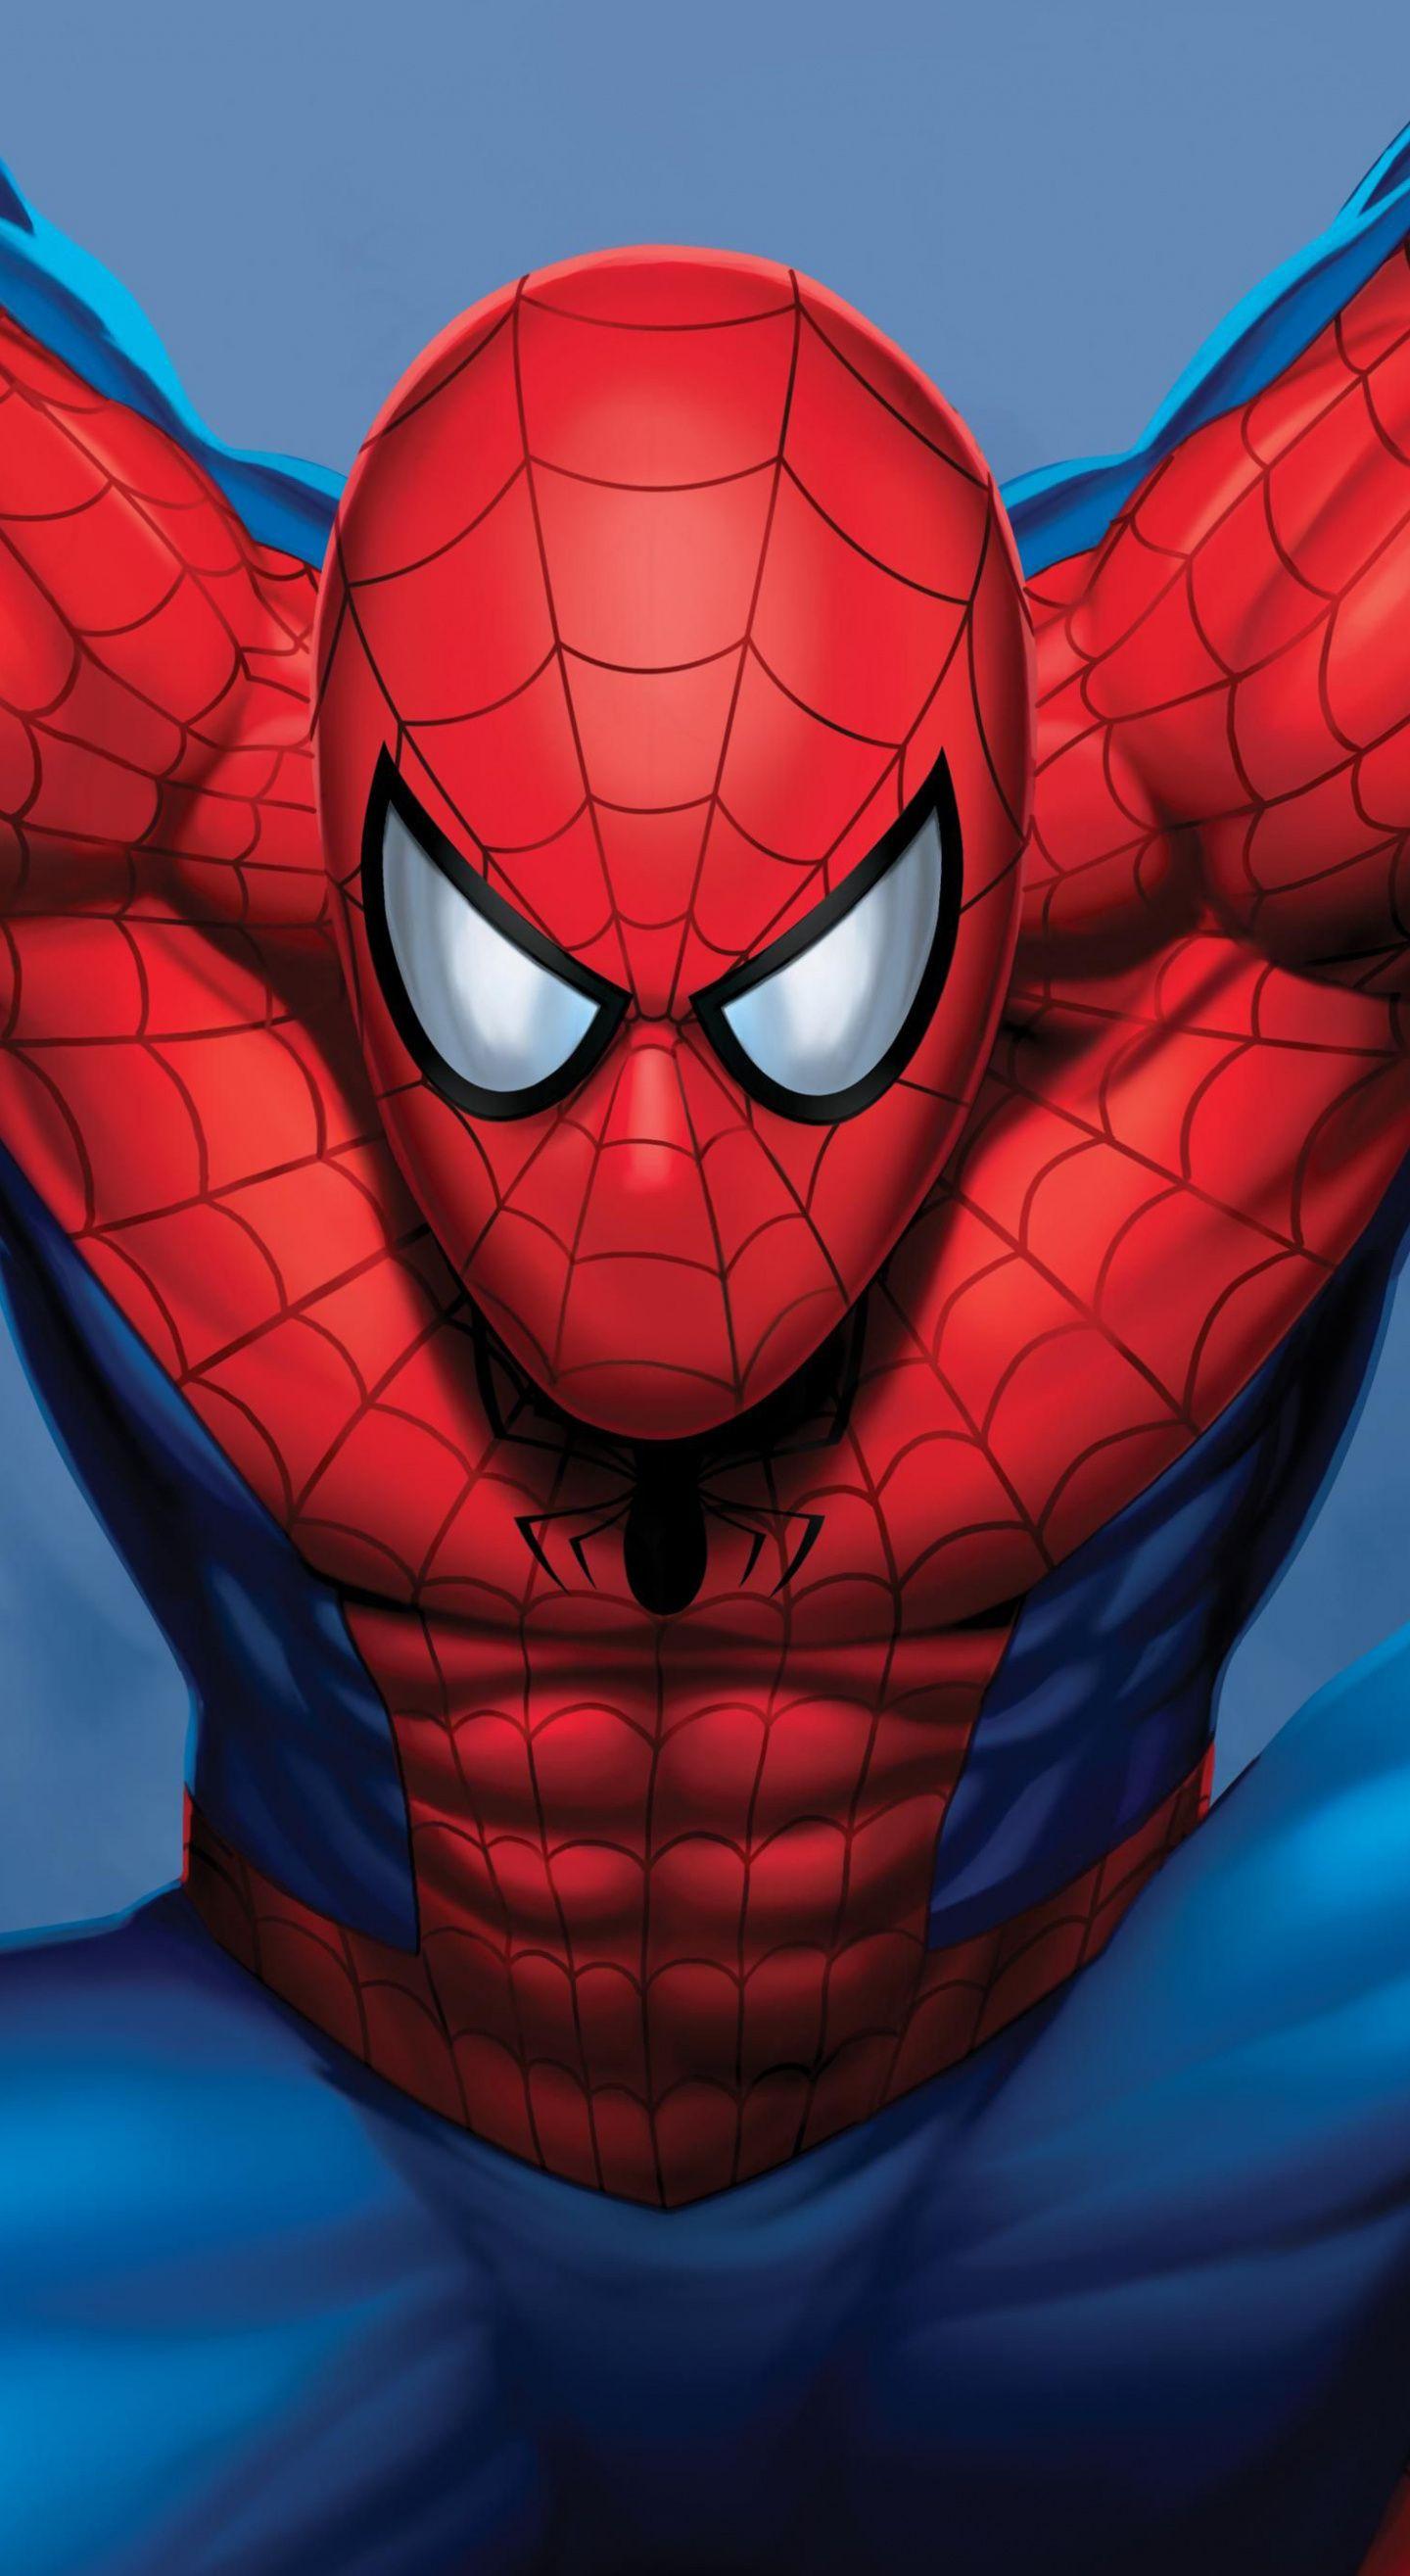 Superhero, Spider Man, Marvel, 1440x2630 Wallpaper. Superhero Artwork, Spiderman Artwork, Spiderman Art